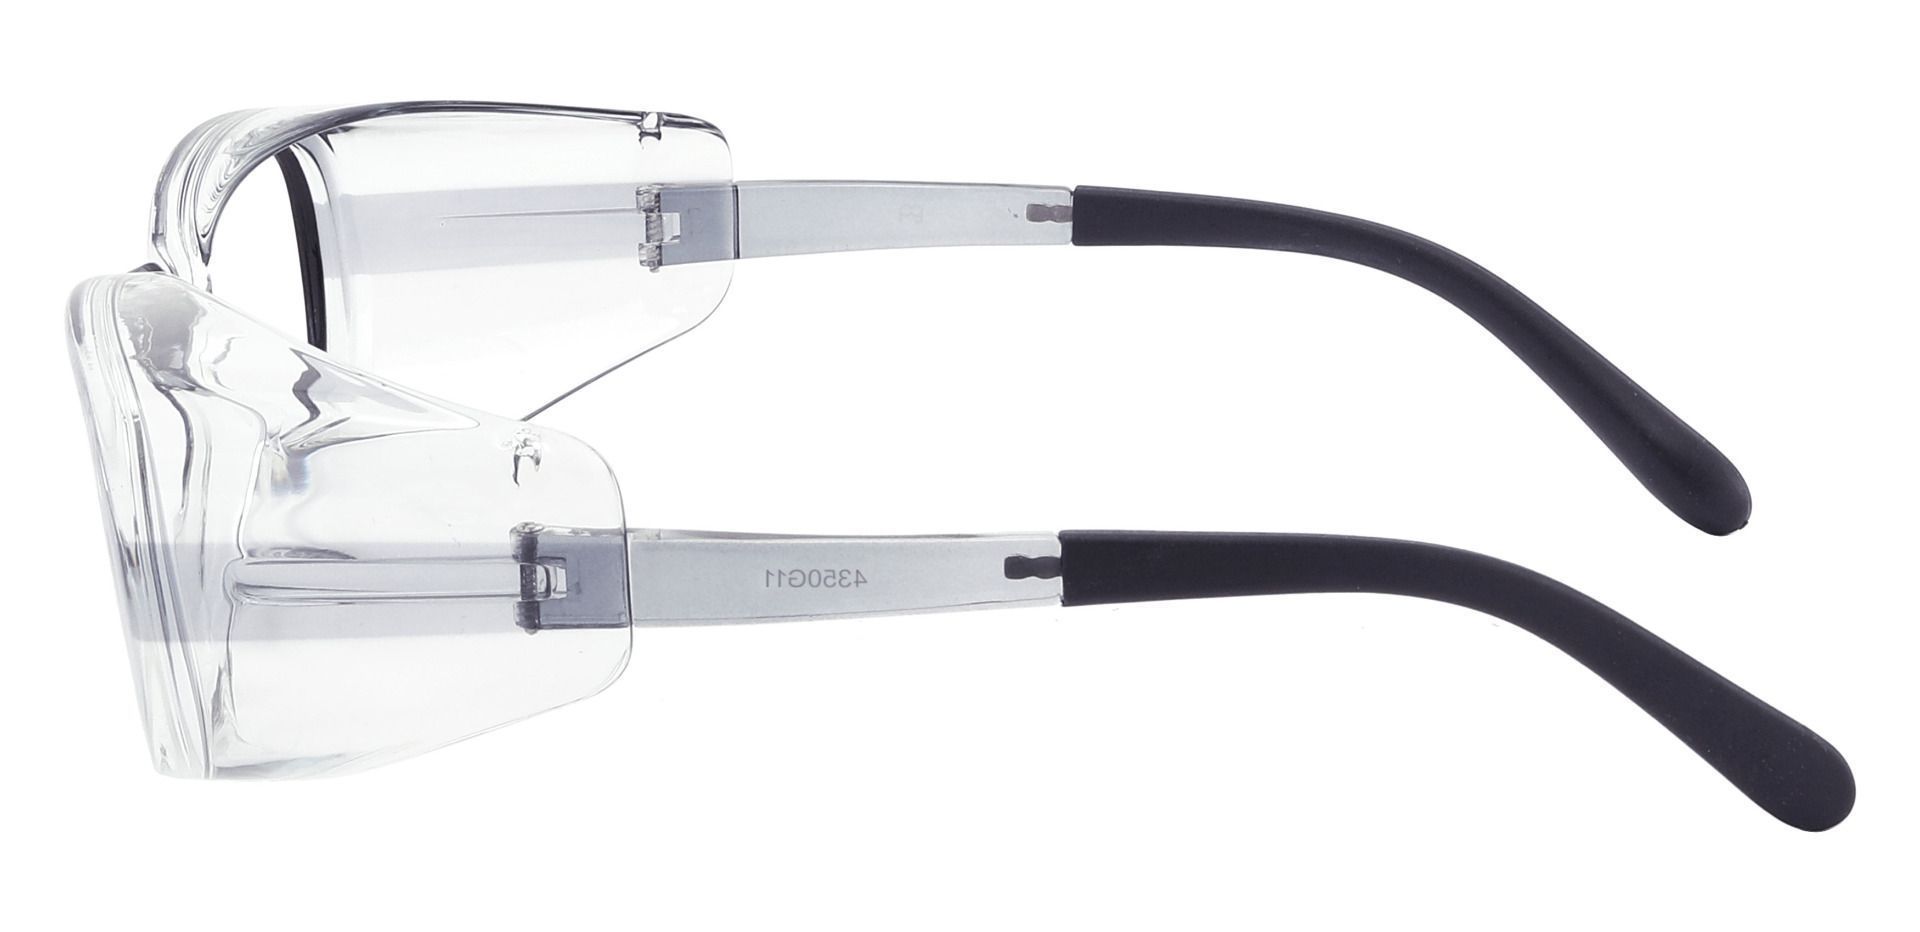 Omega Sports Goggles Prescription Glasses - Gray